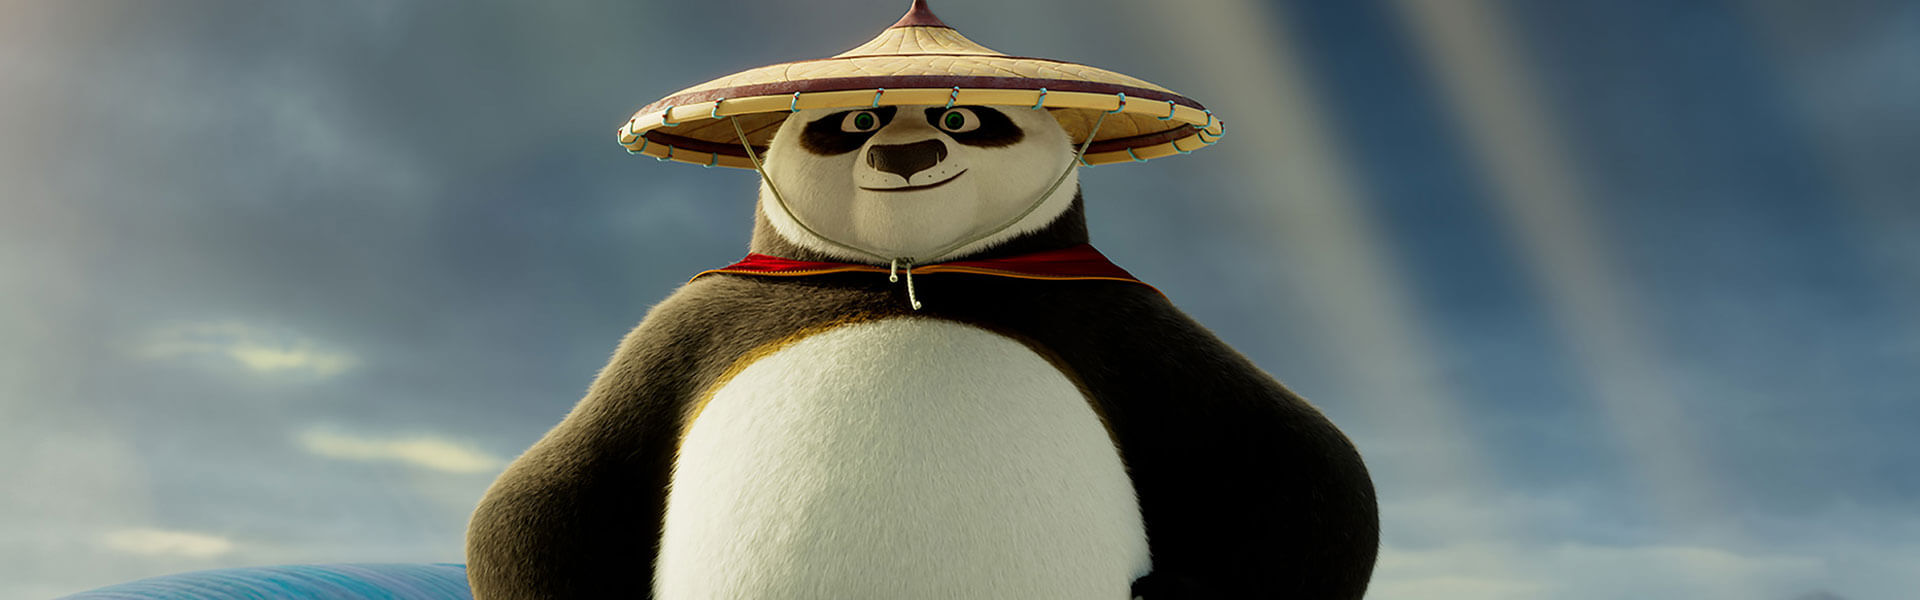 Crítica: ‘Kung Fu Panda 4’ apunta al futuro de la franquicia (sin mucho qué decir)